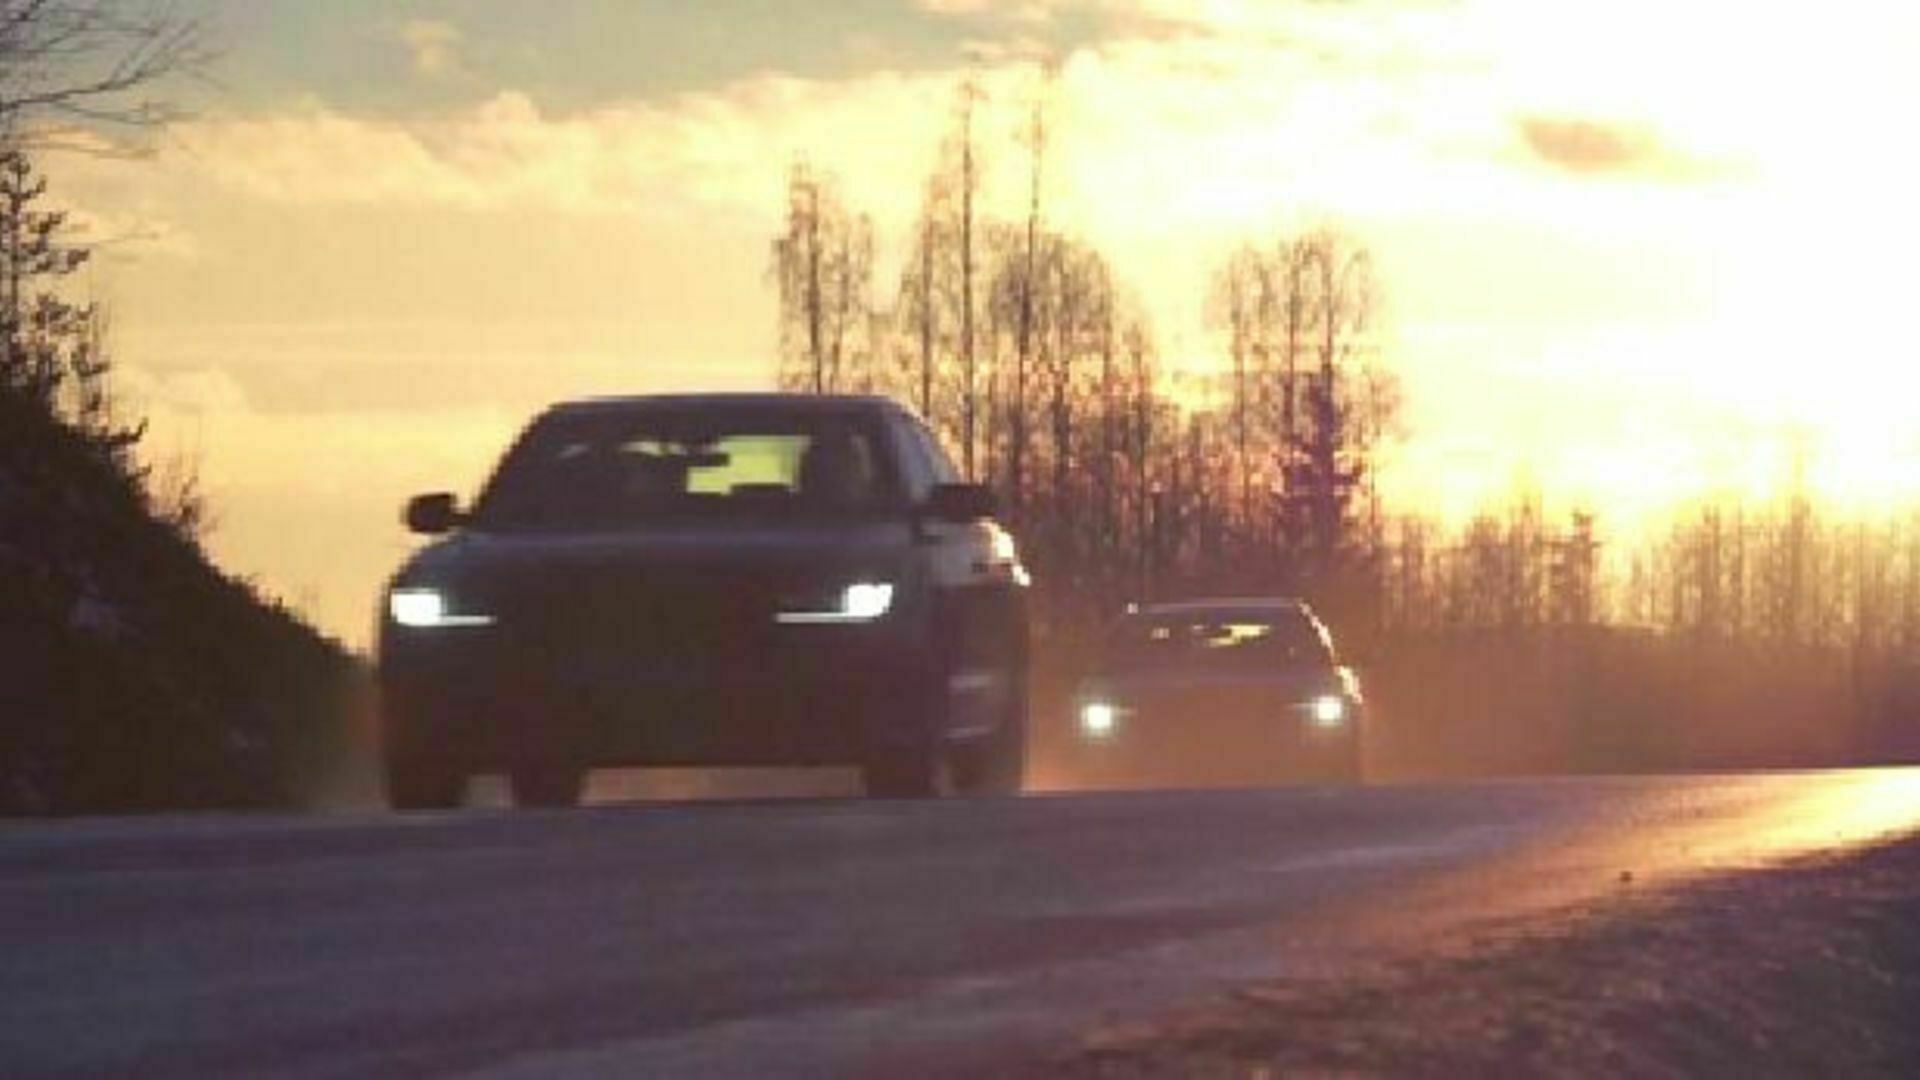 Technik am Limit - Wie ein Audi sehen lernt